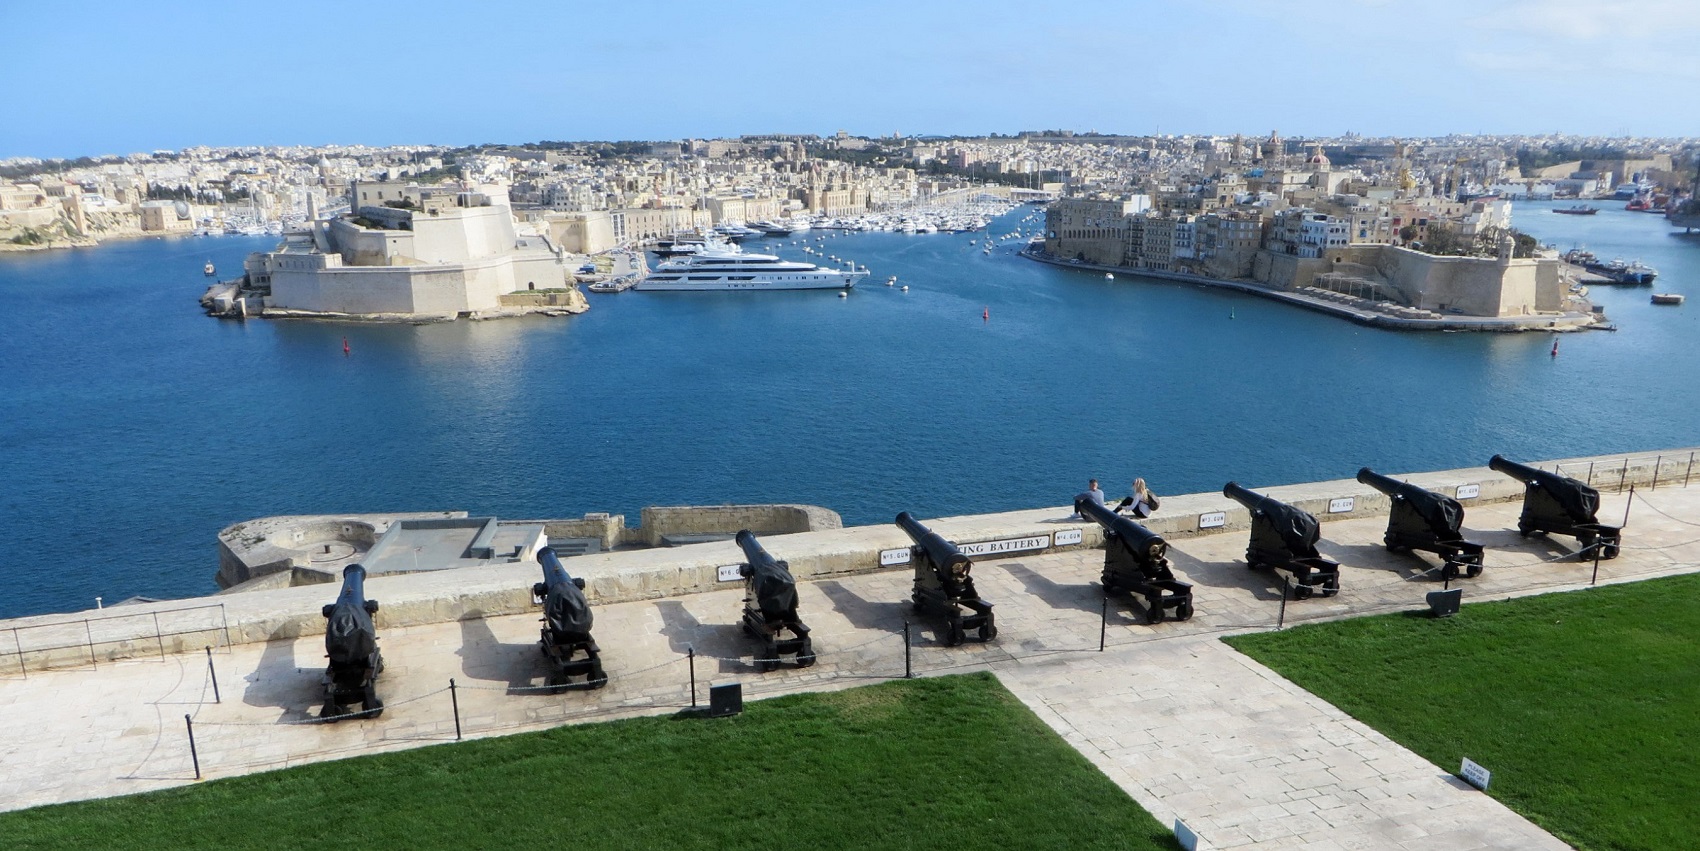 Malta Valletta Leisure & activities